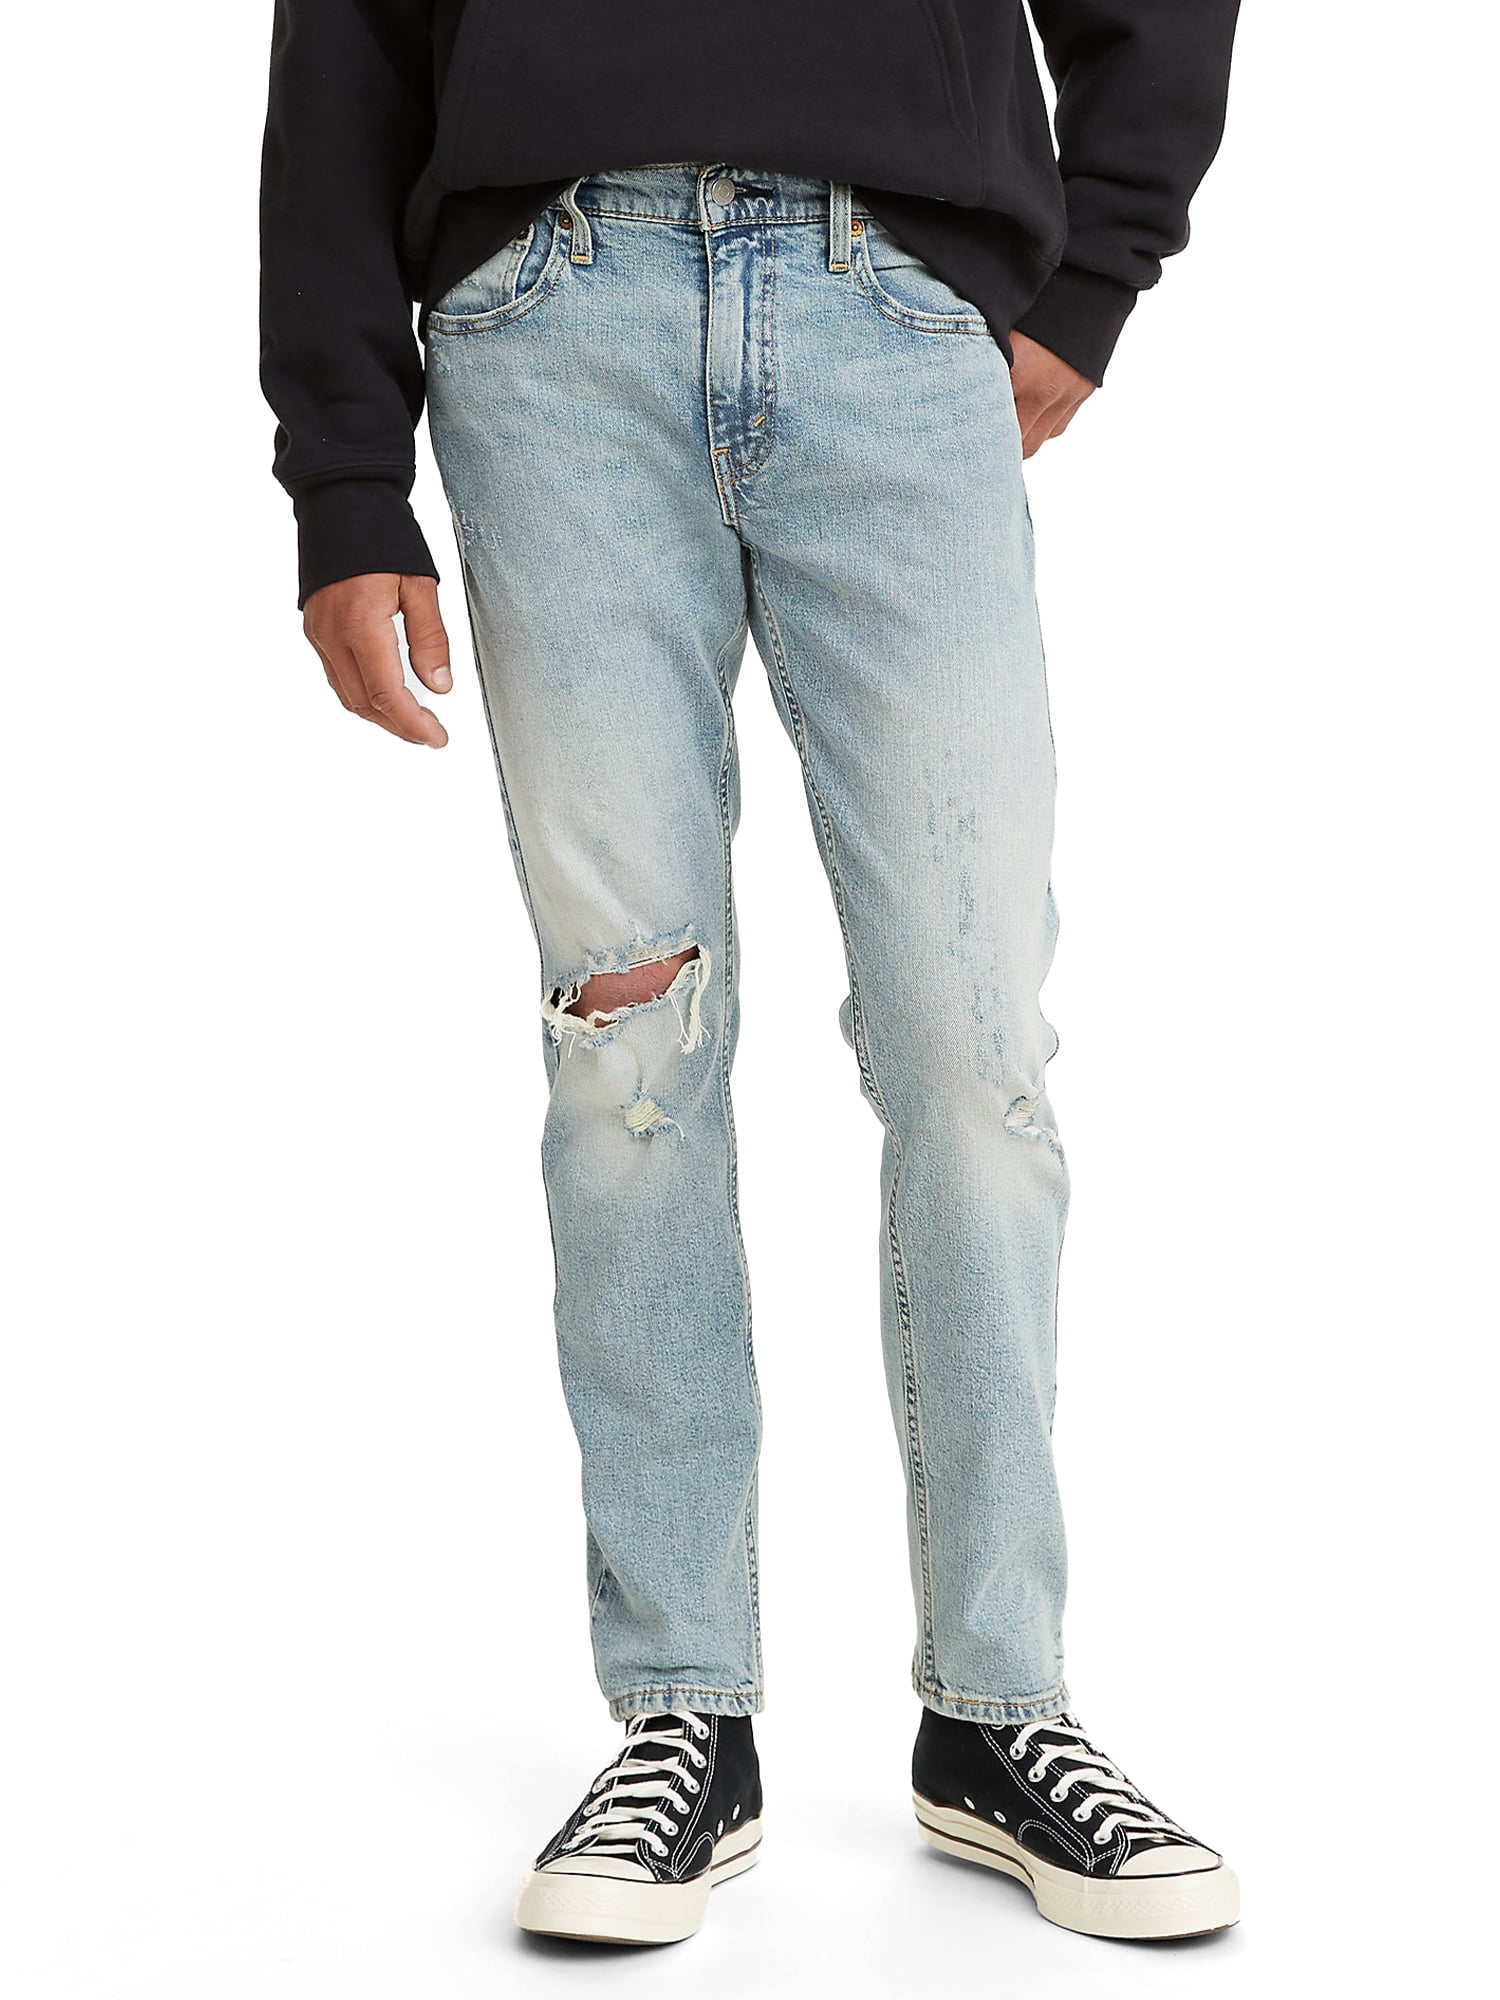 Levi's Men's 512 Slim Taper Fit Jeans (Seasonal), Cartridge - Warp